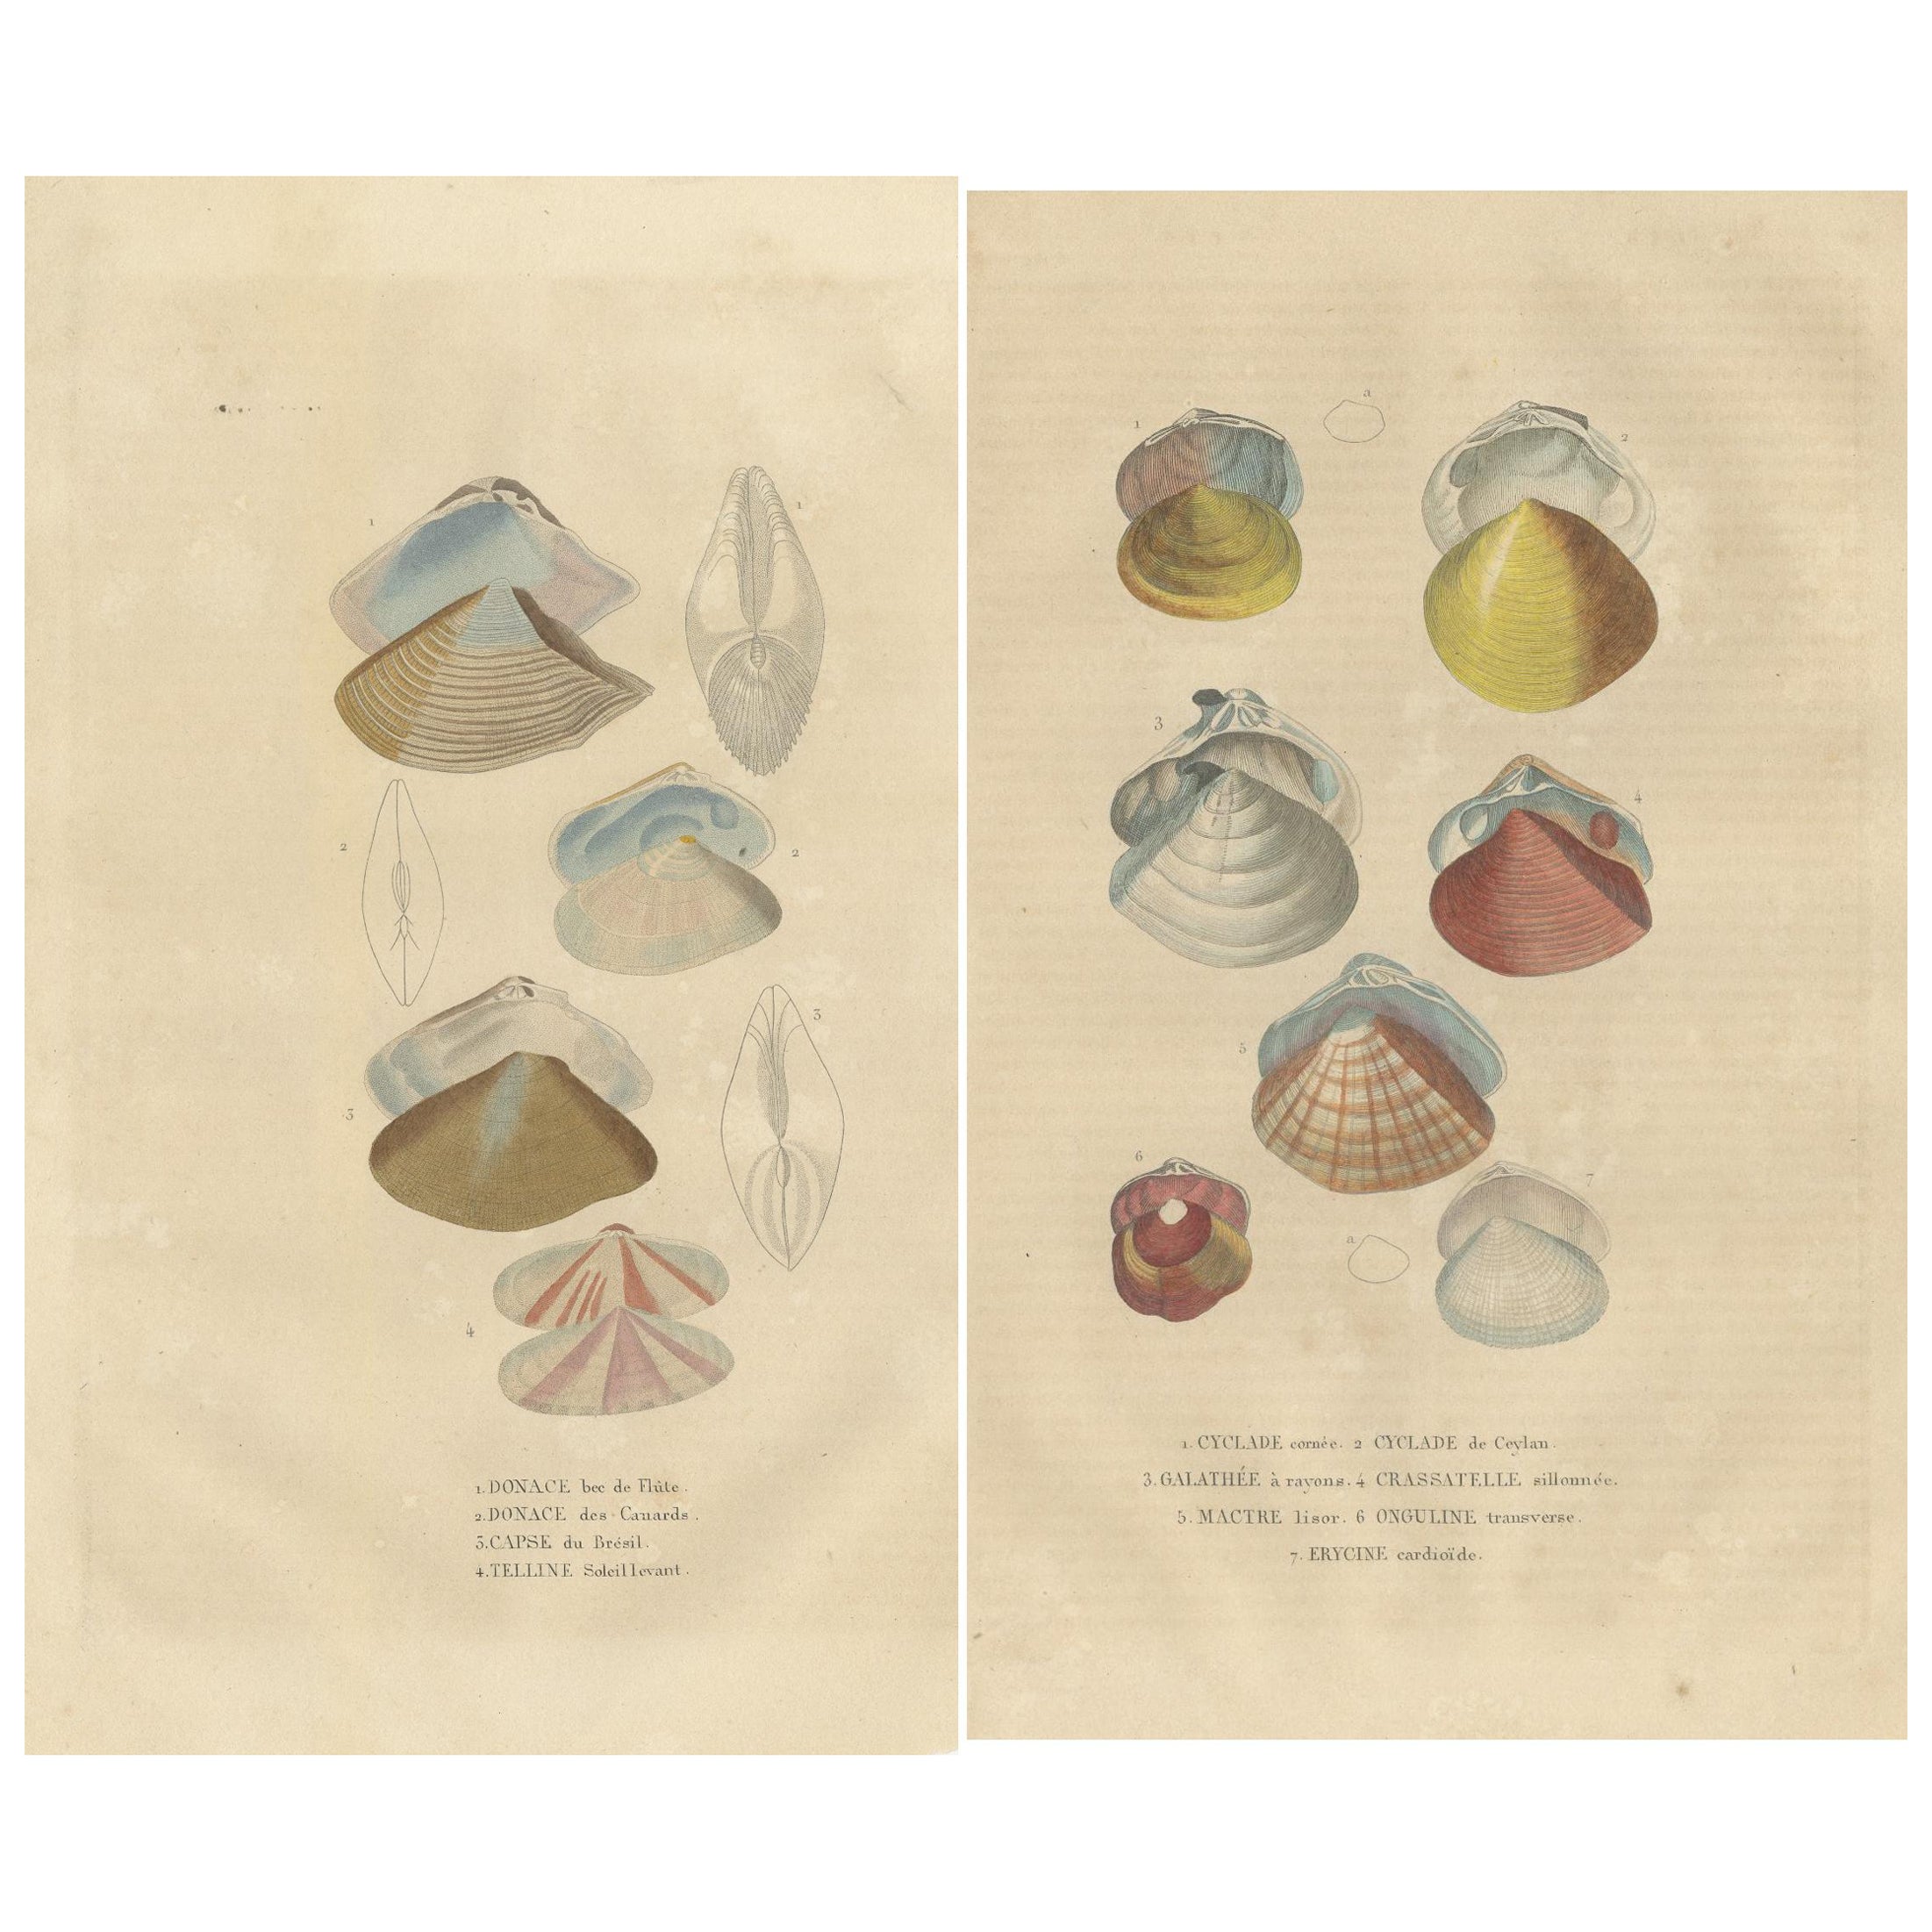 Illustrated Bivalve Shells from 'Dictionnaire Classique des Sciences Naturelles'